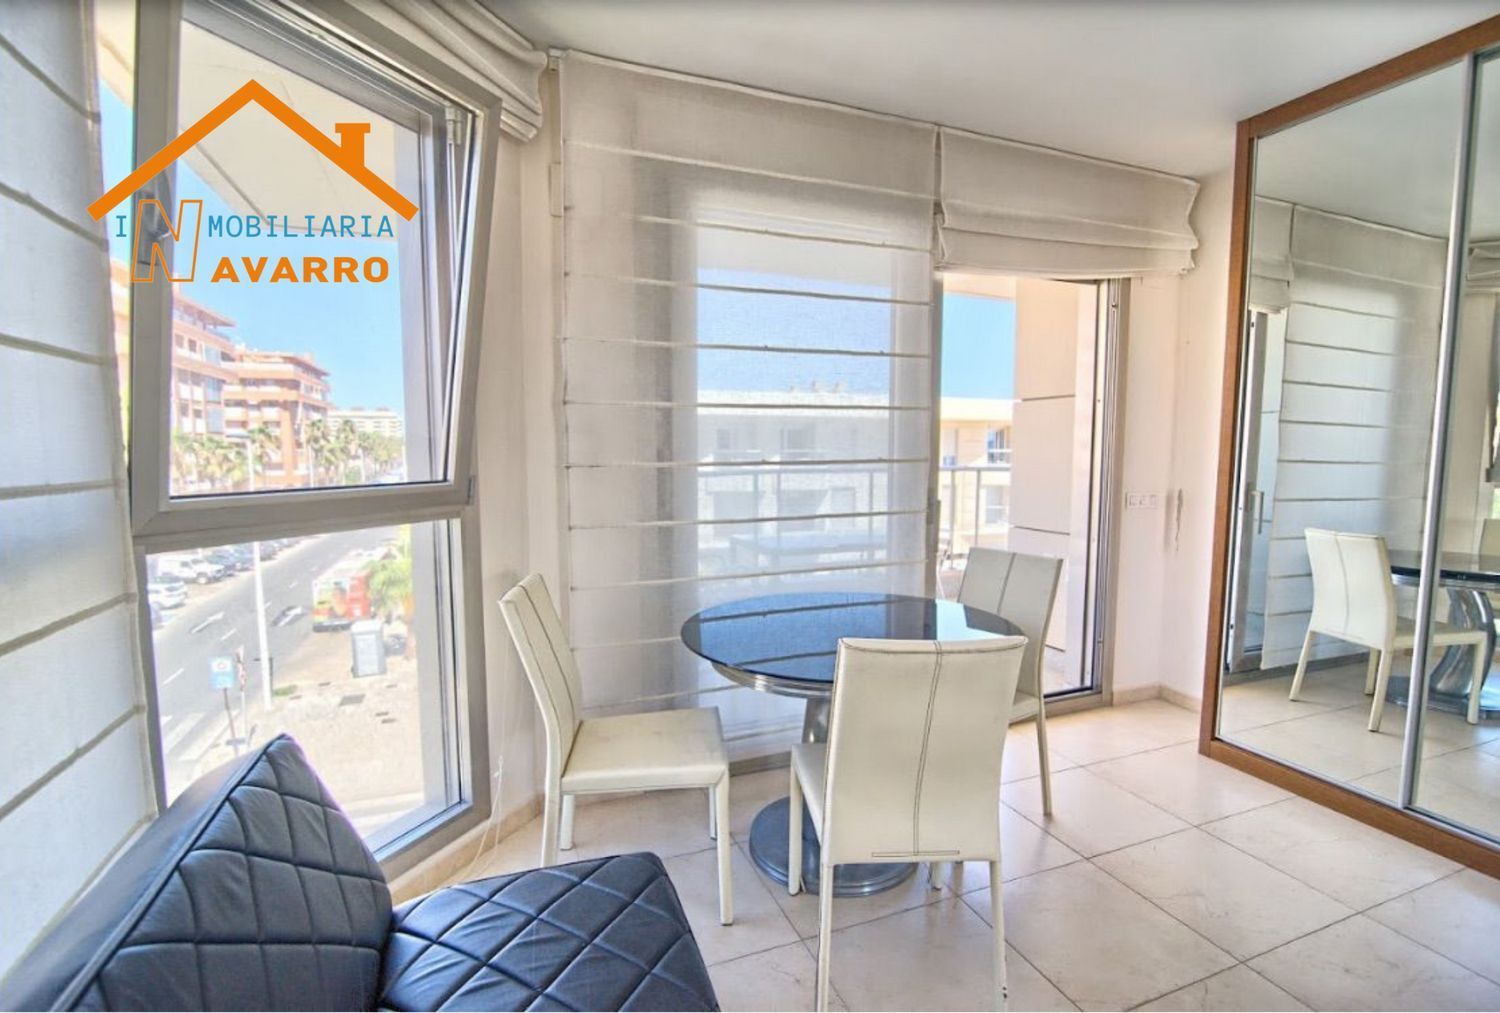 Apartamento en venta en primera línea de mar en la avenida Mare Nostrum, en Alboraya